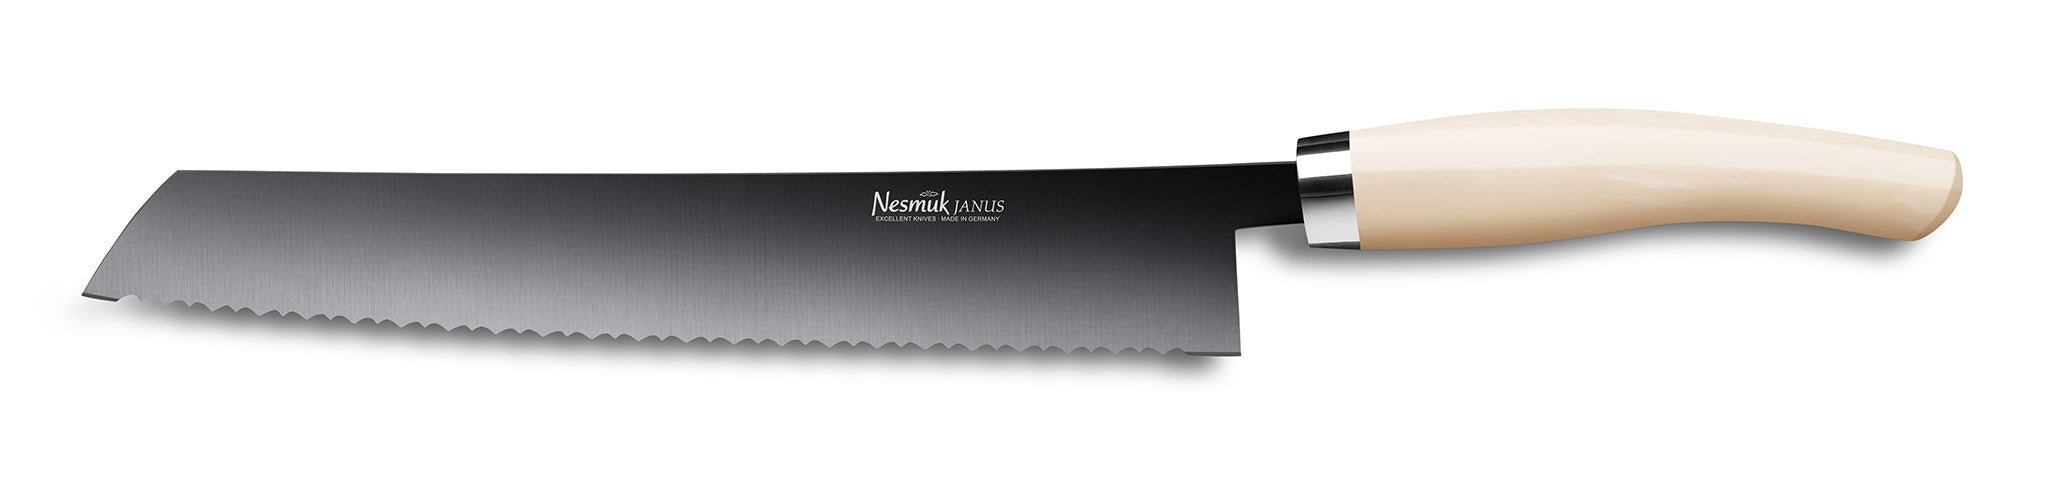 Brotmesser Janus von Nesmuk mit schwarzer Klinge und Griff aus Juma Ivory Hightech Kunststoff